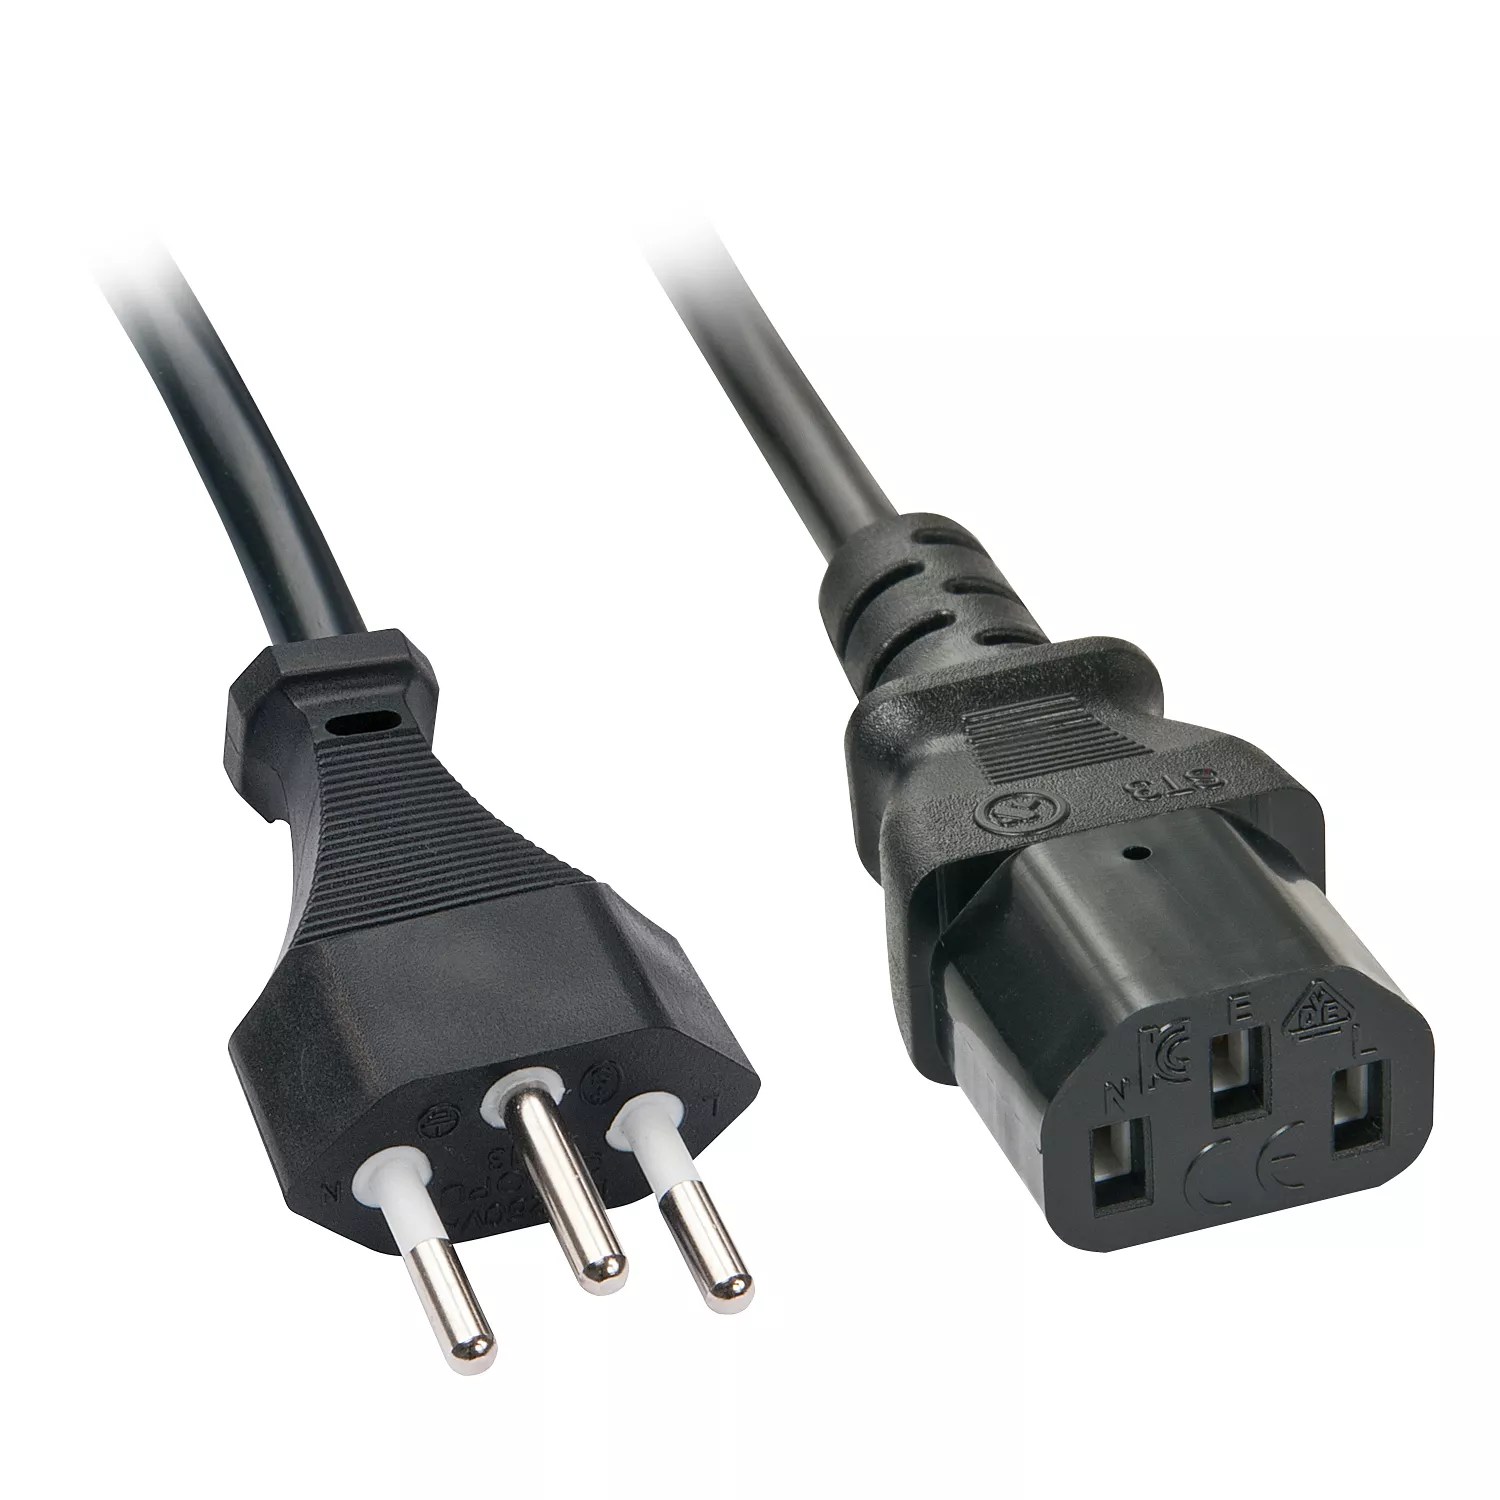 Achat LINDY 0.7m IEC-Power Cable Swiss to C13 et autres produits de la marque Lindy